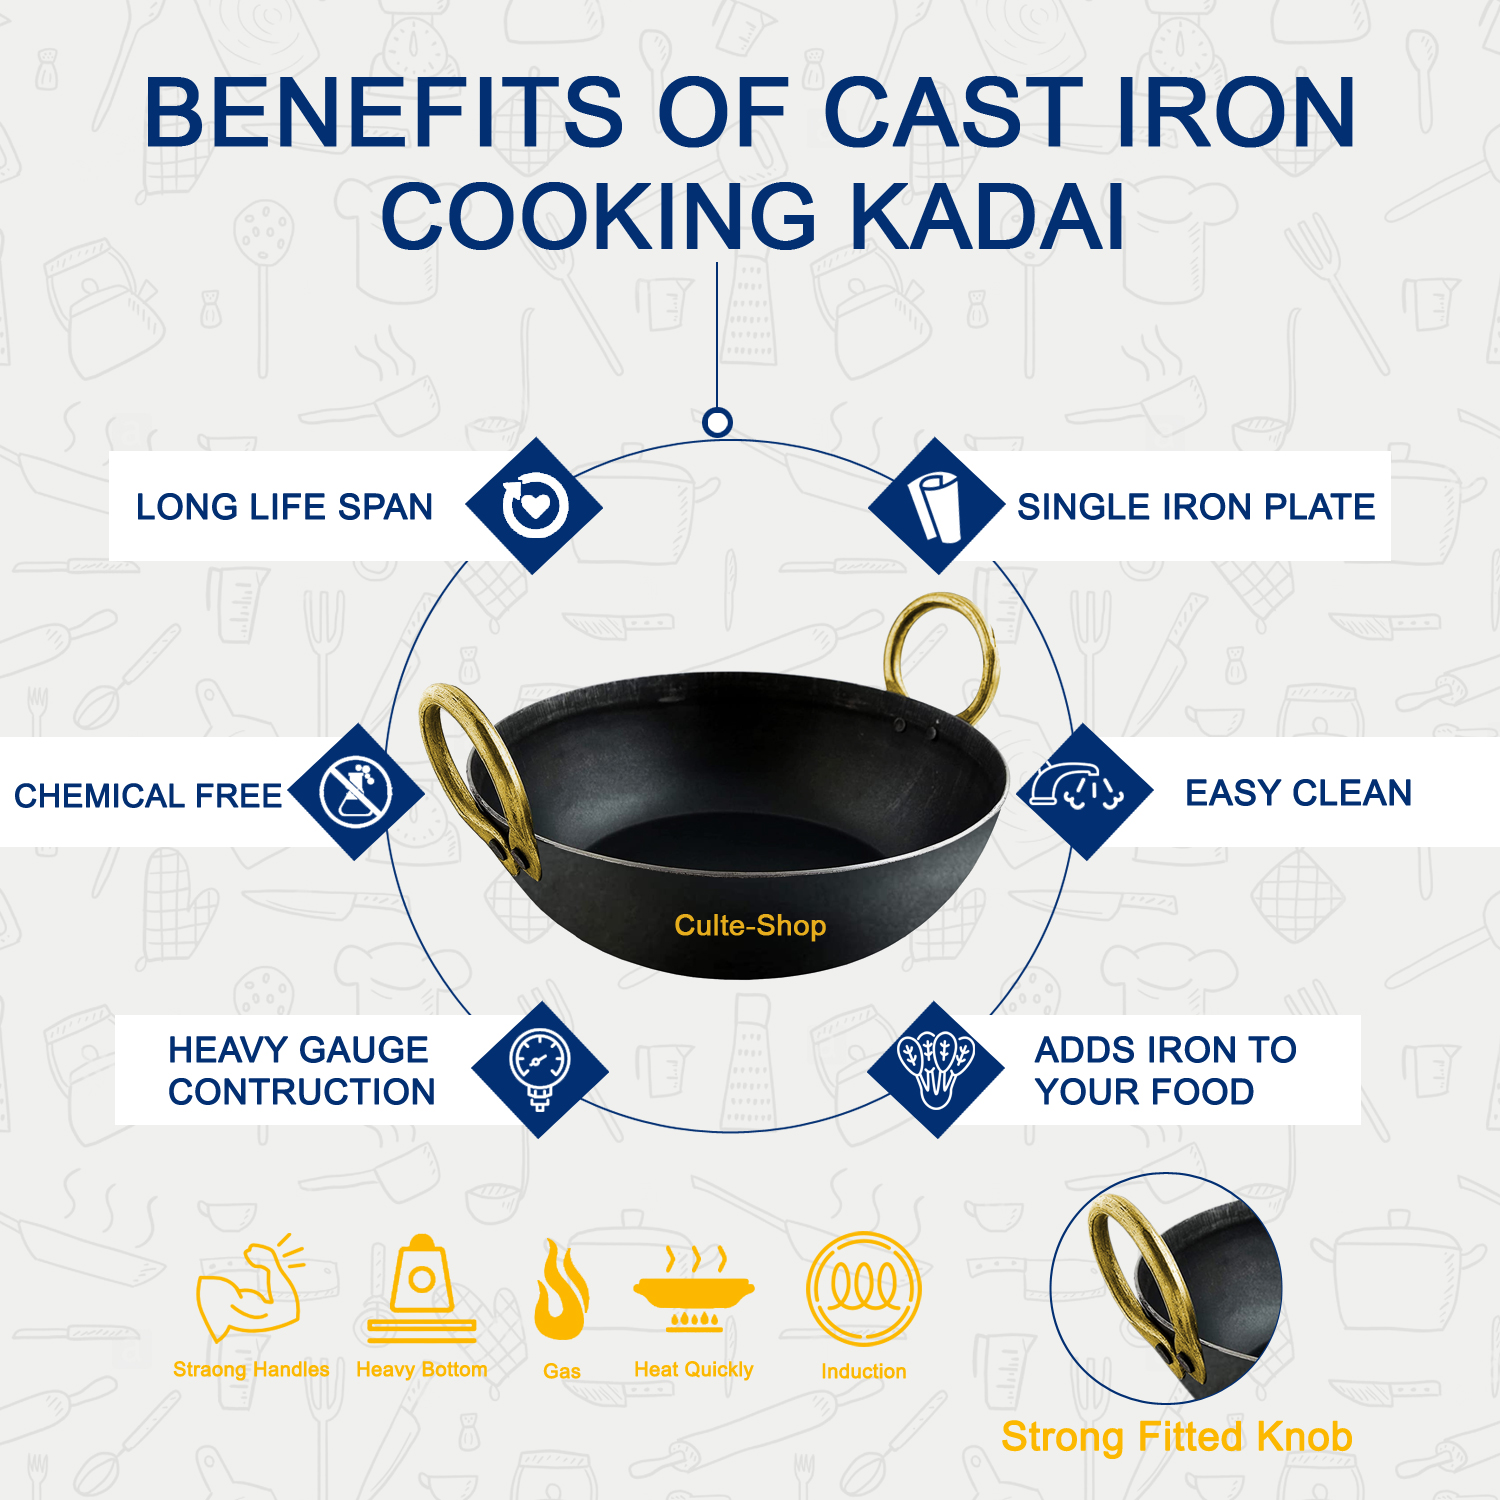 Iron Kadai For Cooking - Cast Iron Kadai